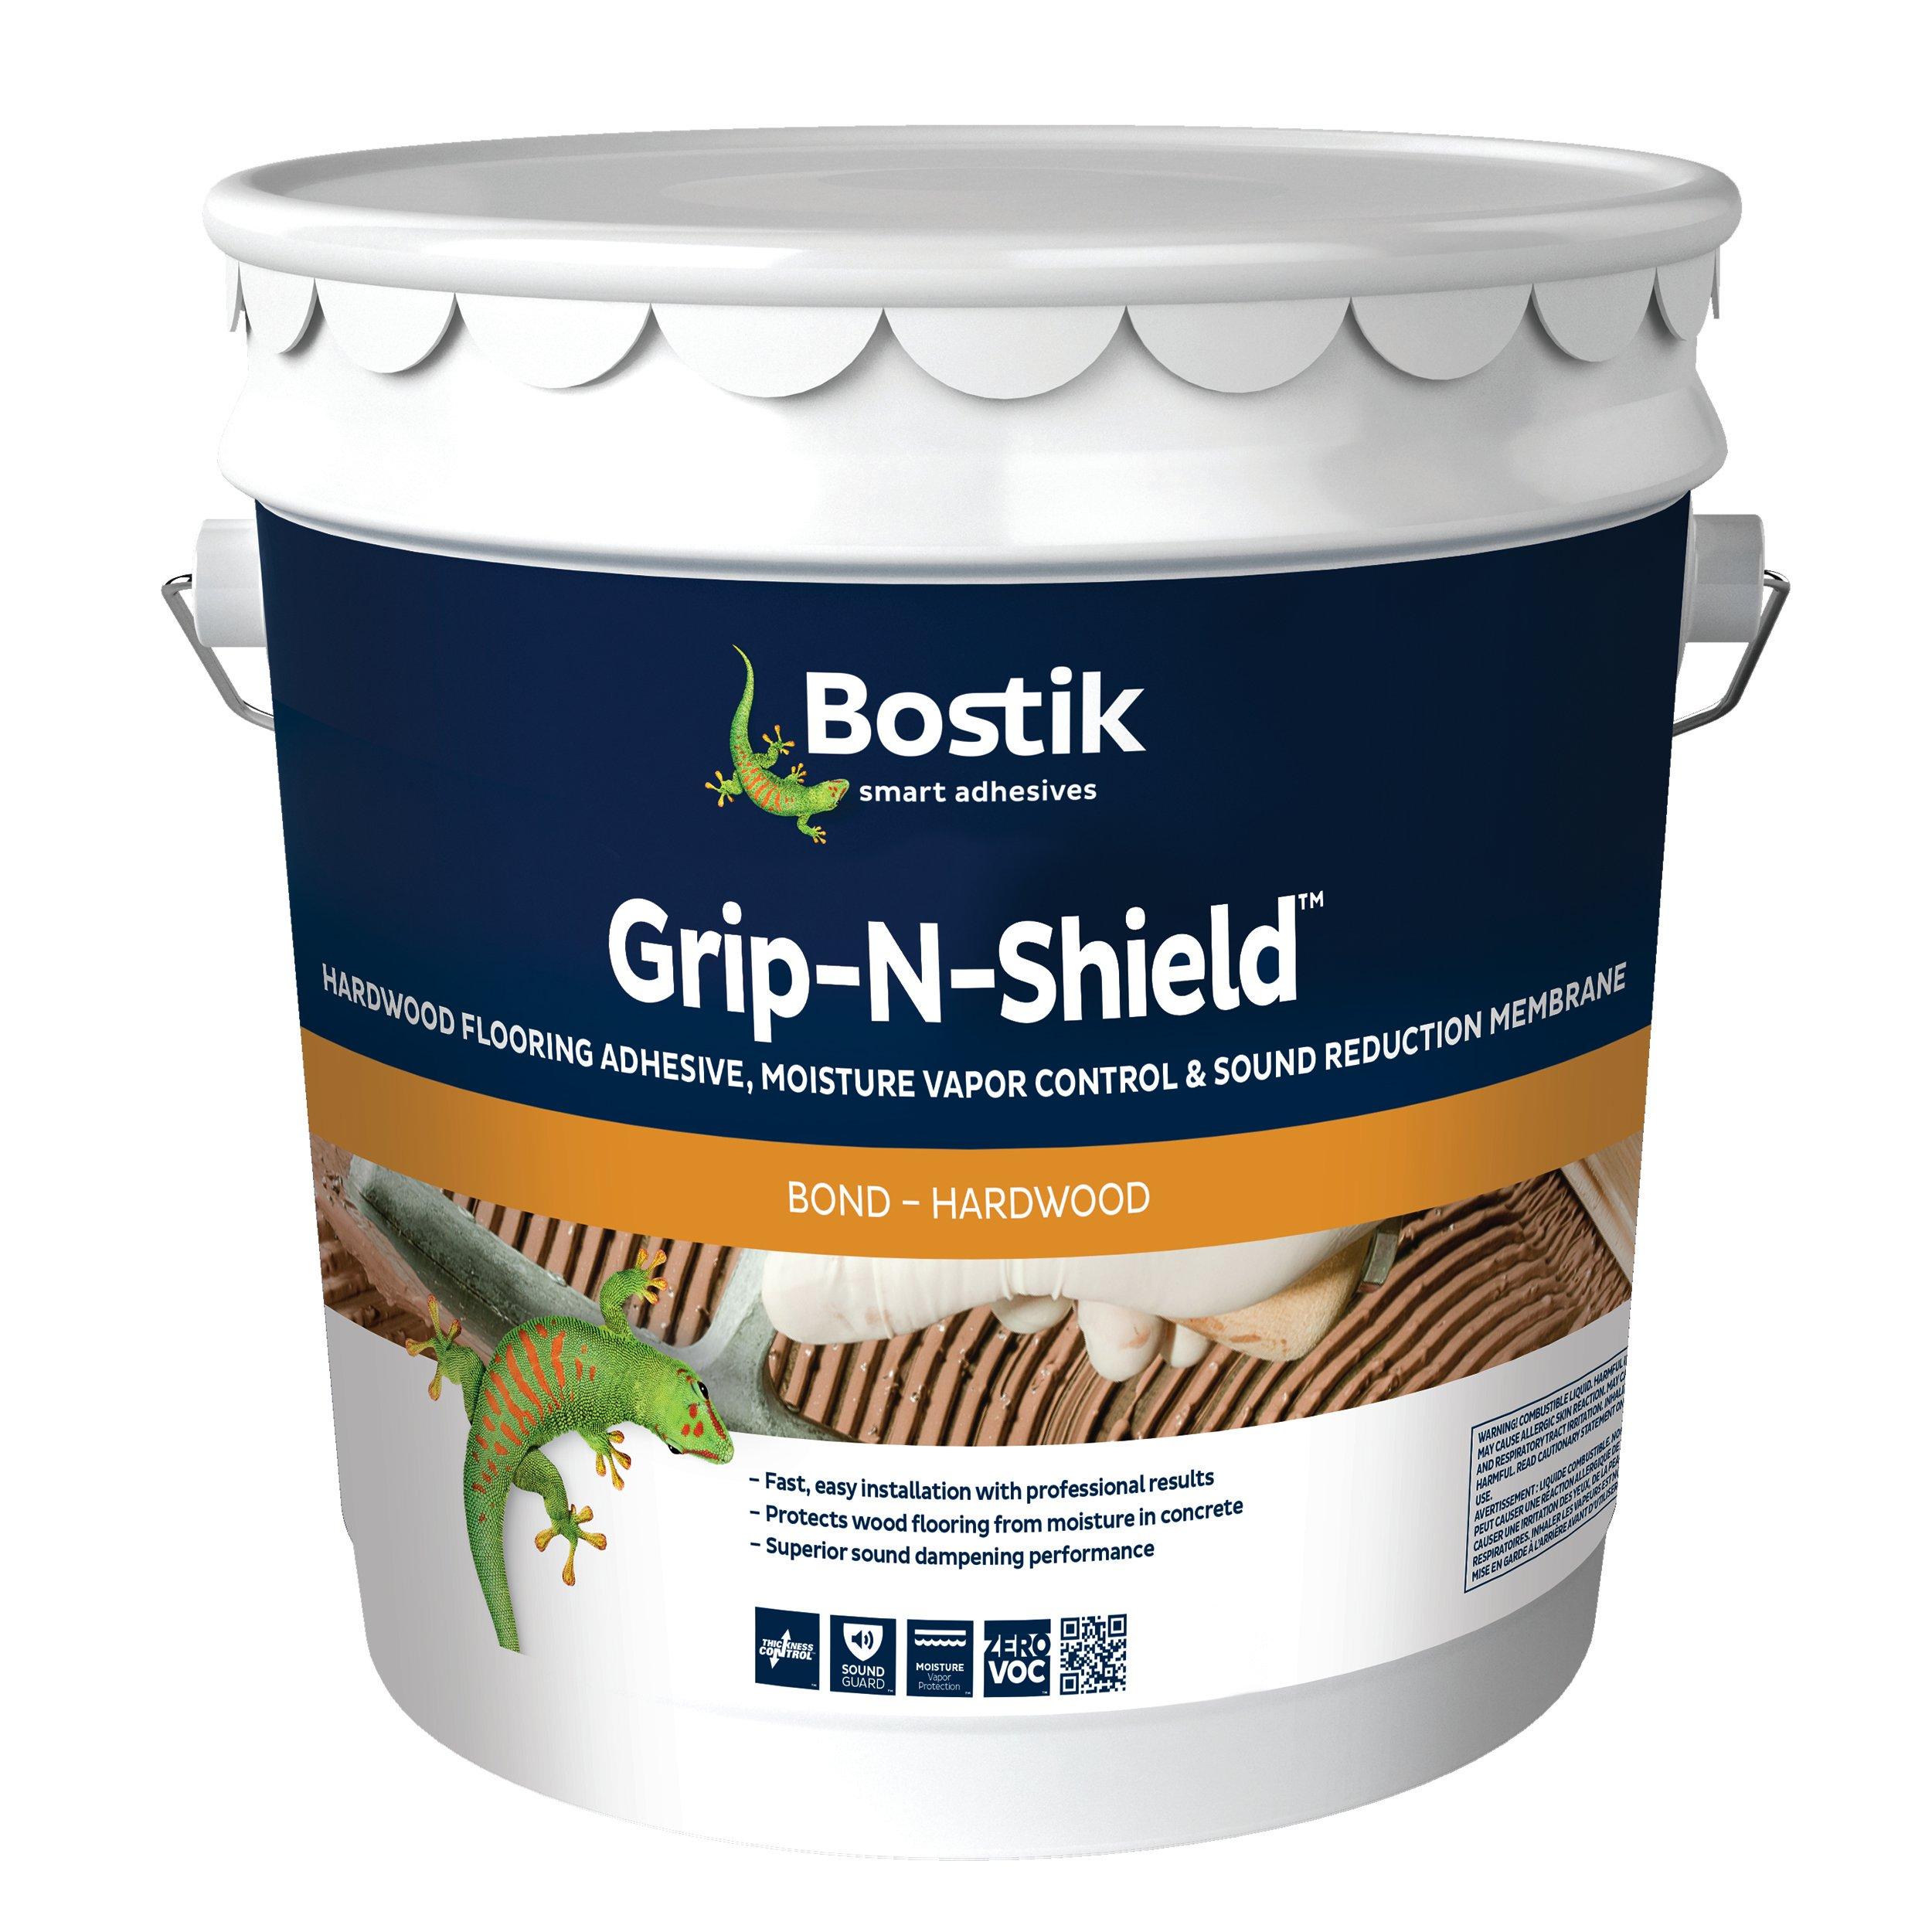 Bostik Grip N Shield Hardwood Flooring, Hardwood Floor Adhesive